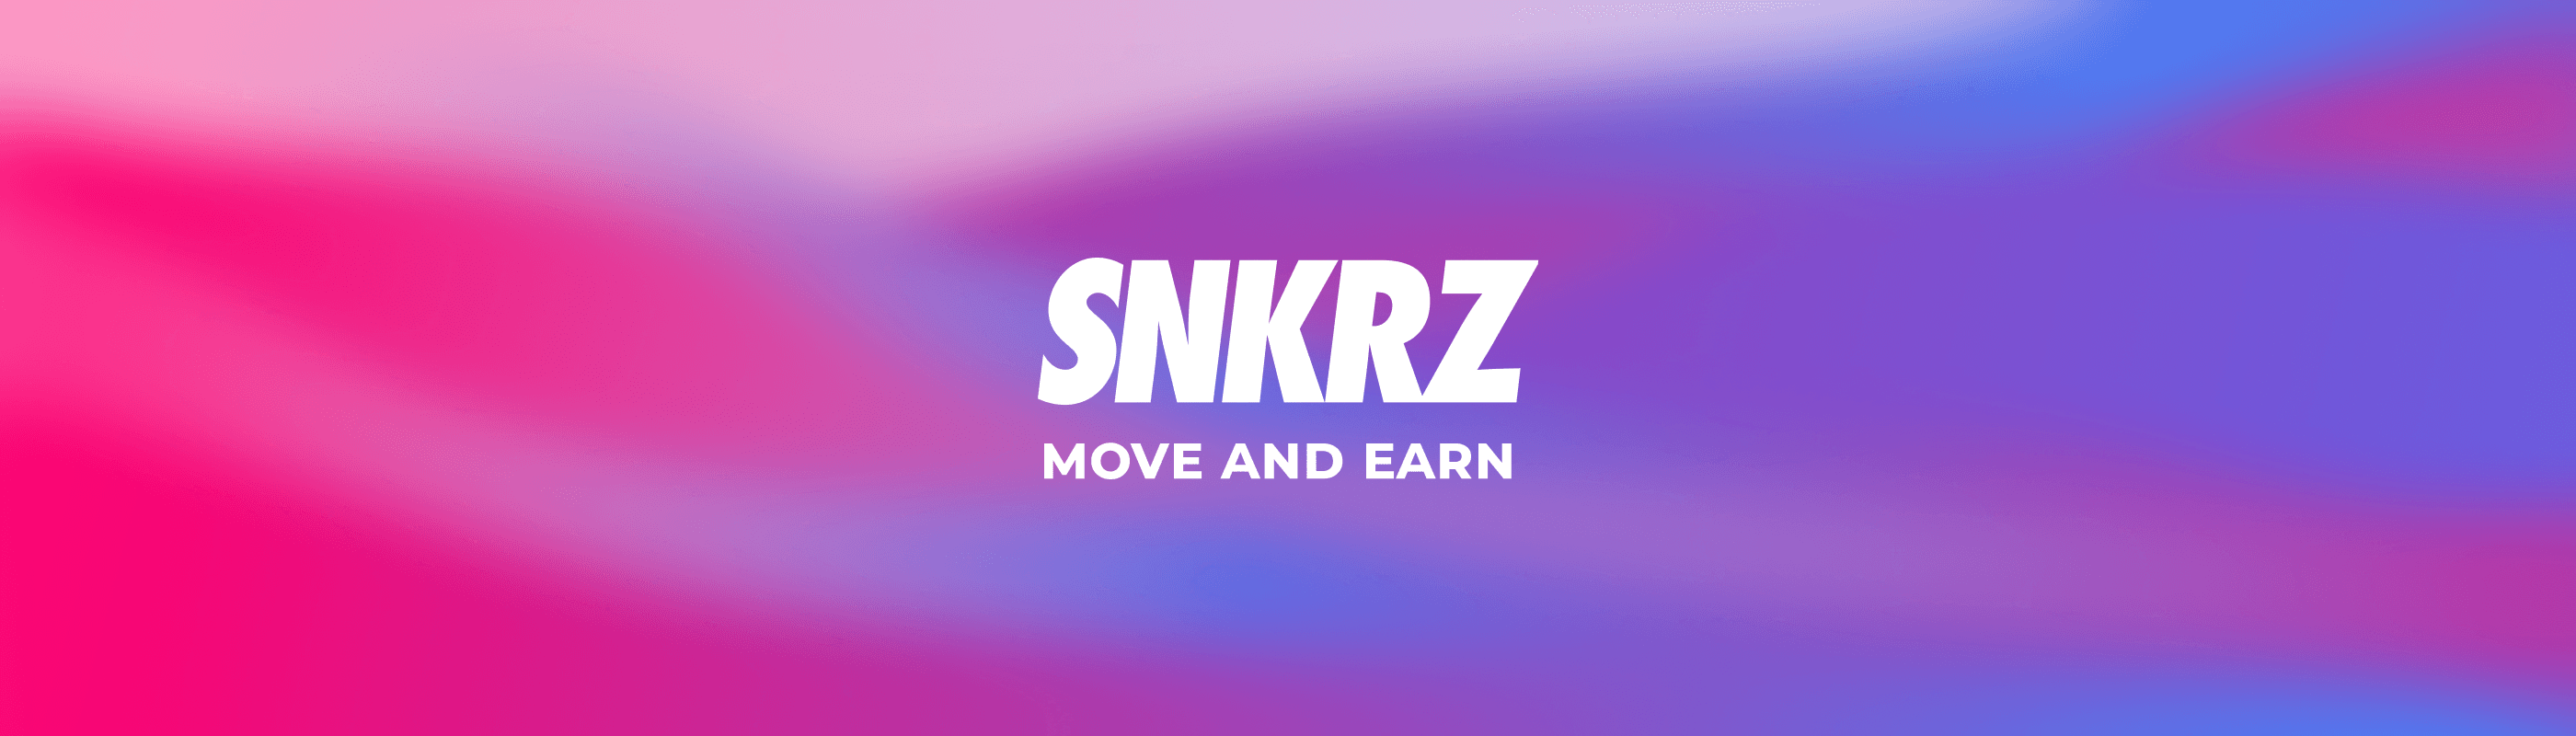 SNKRZ-OFFICIAL banner